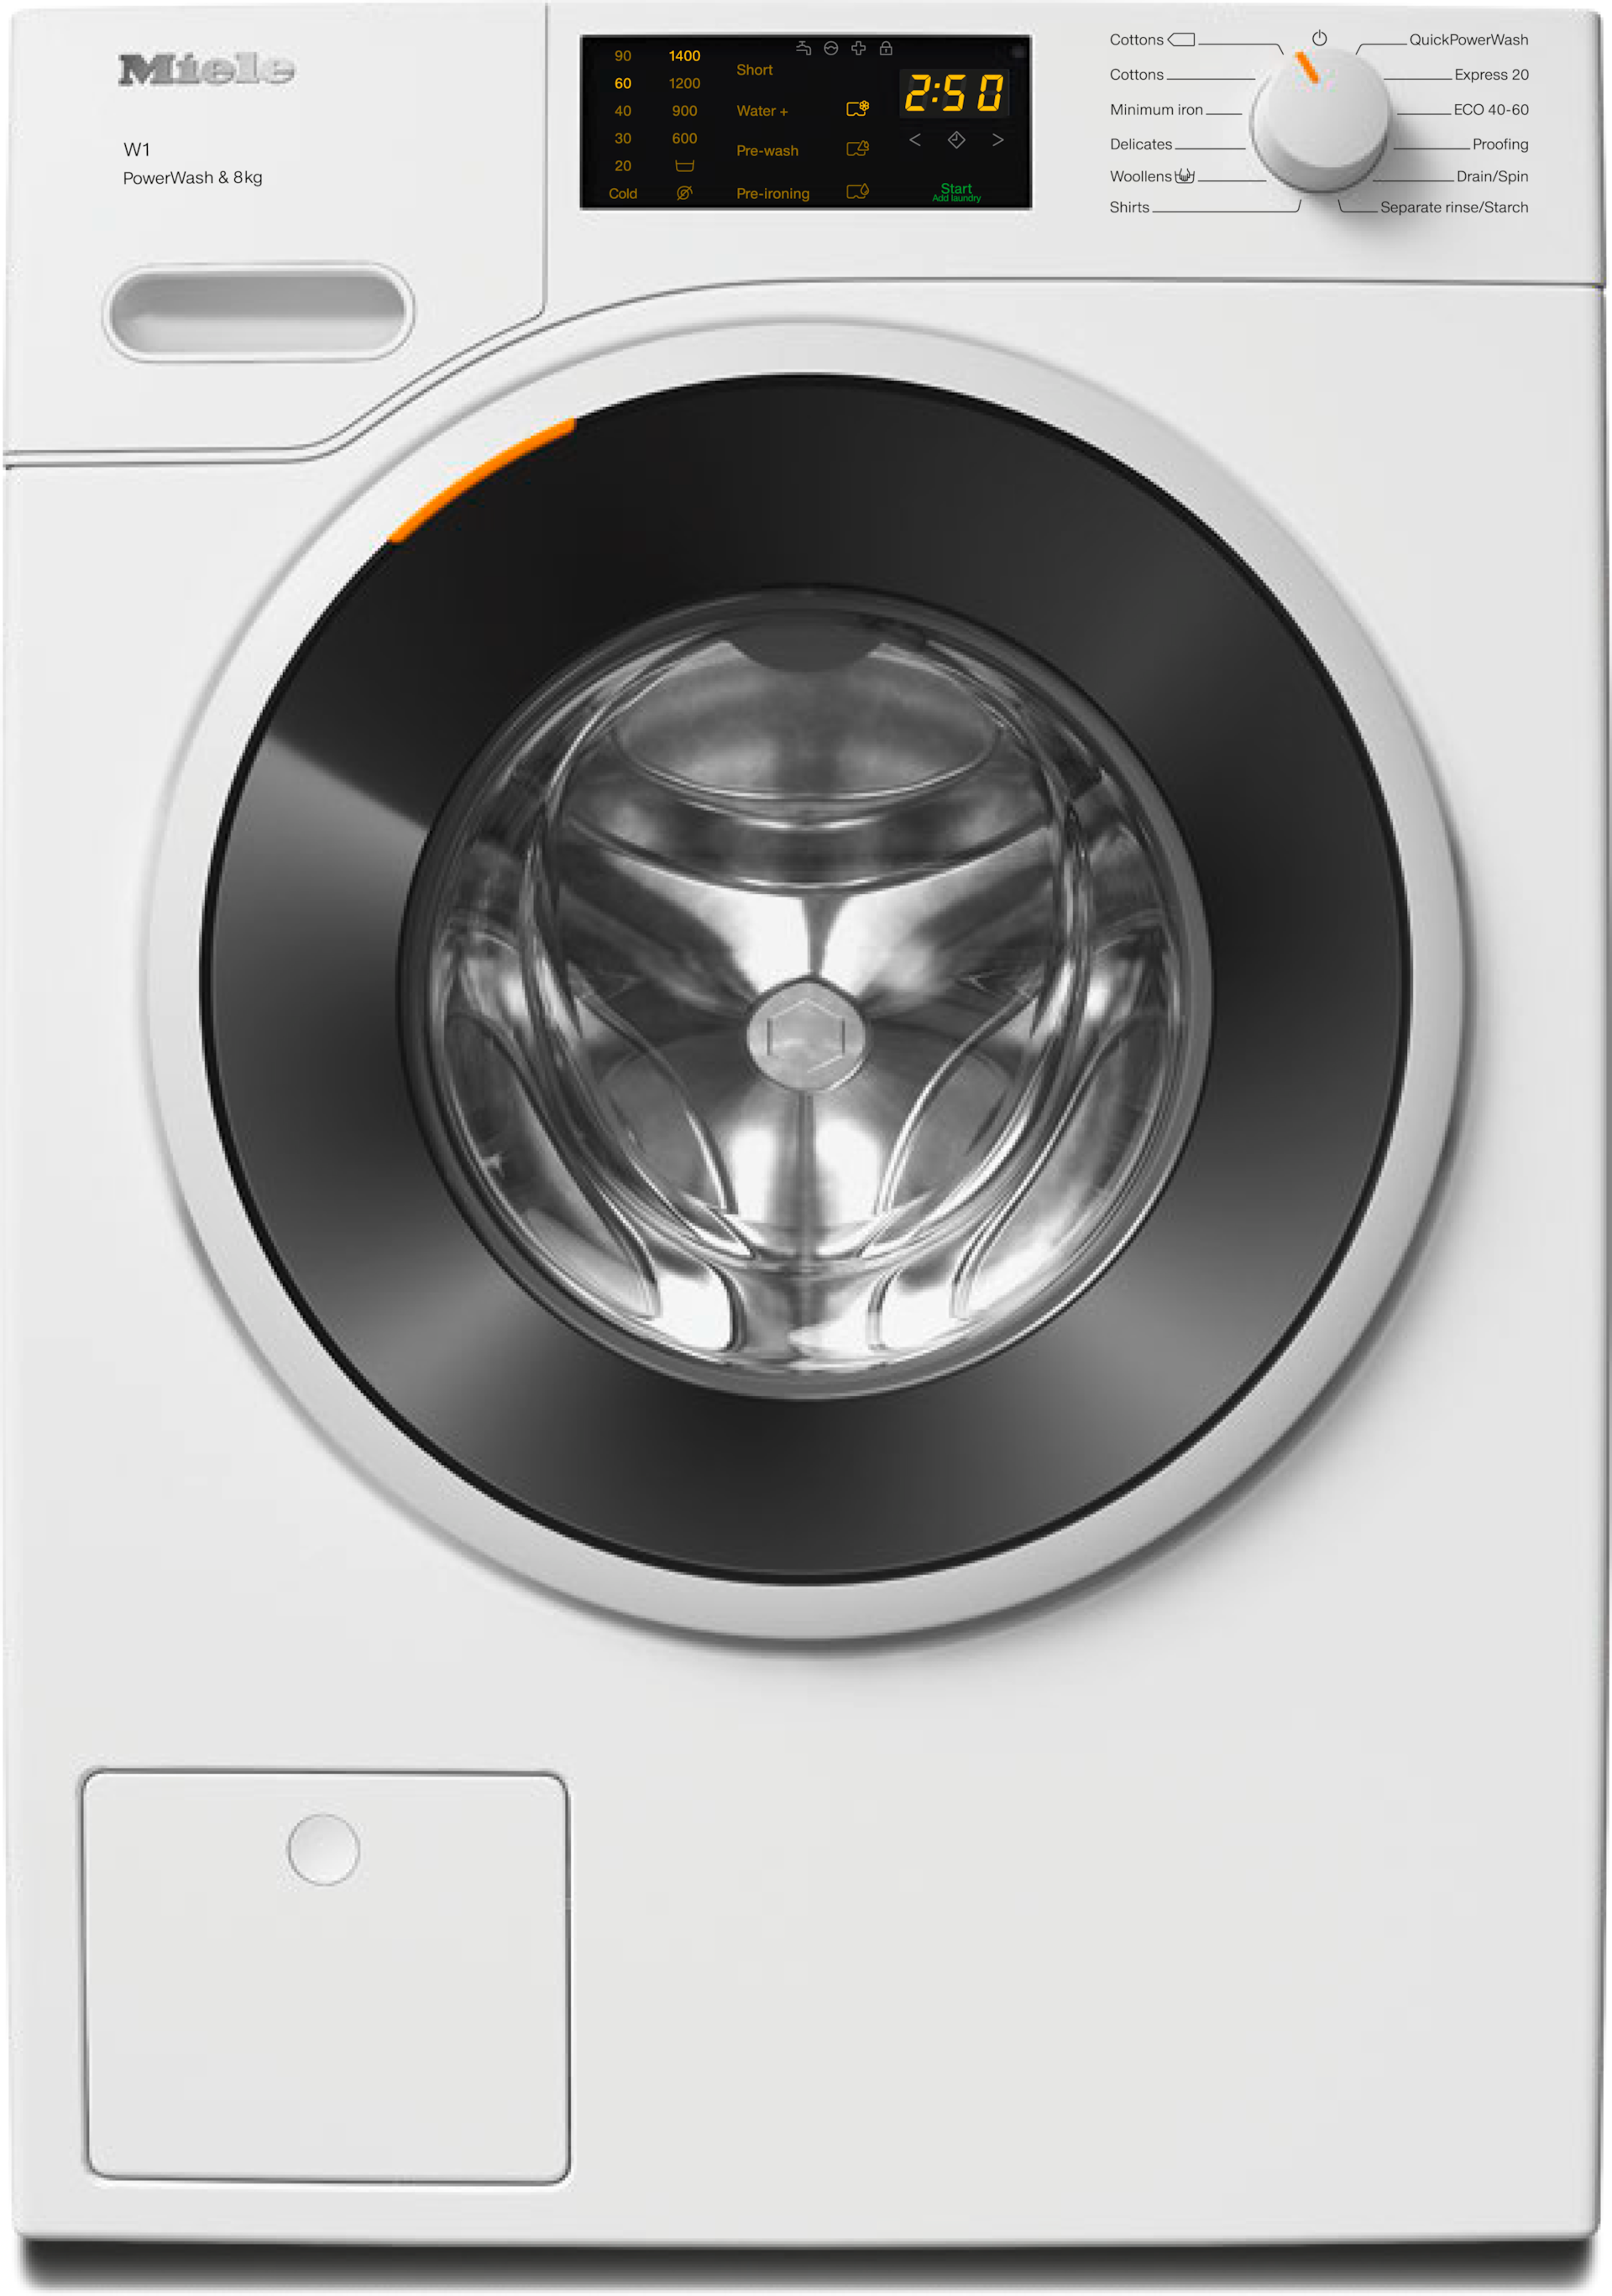 Washing machines - WWD320 WCS PWash&8kg Lotus white - 1